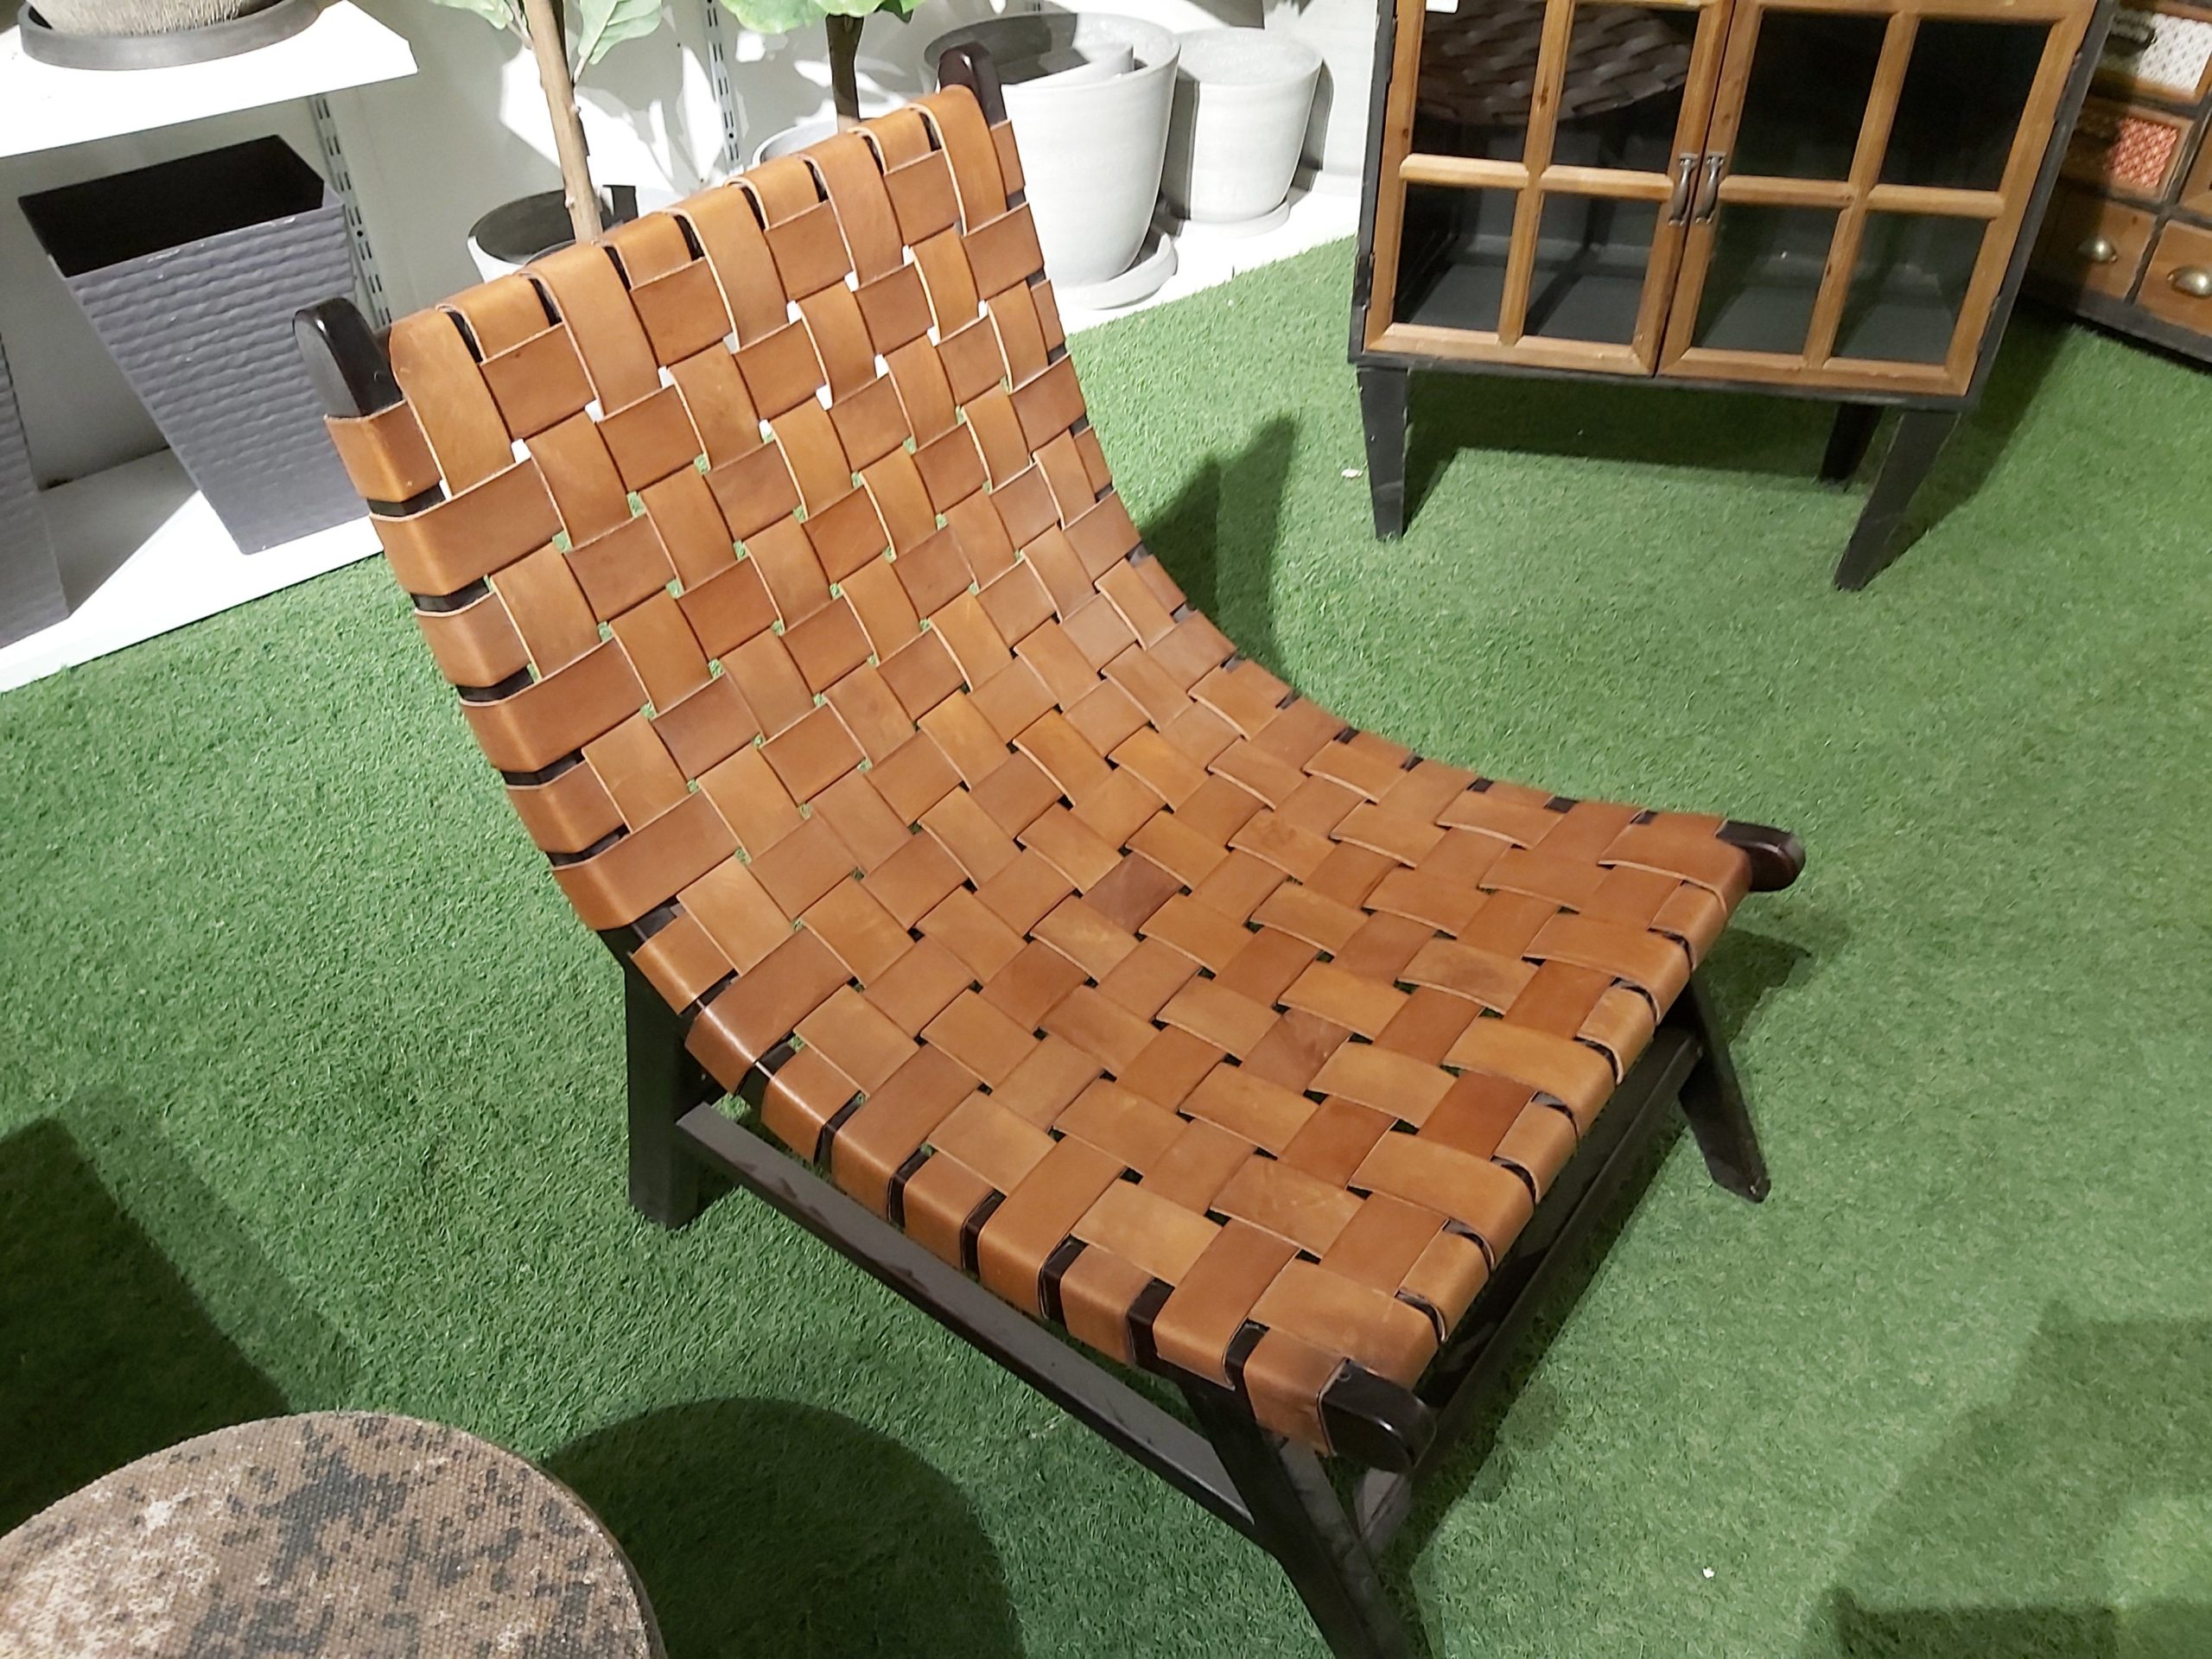 leather sofa sets in dubai